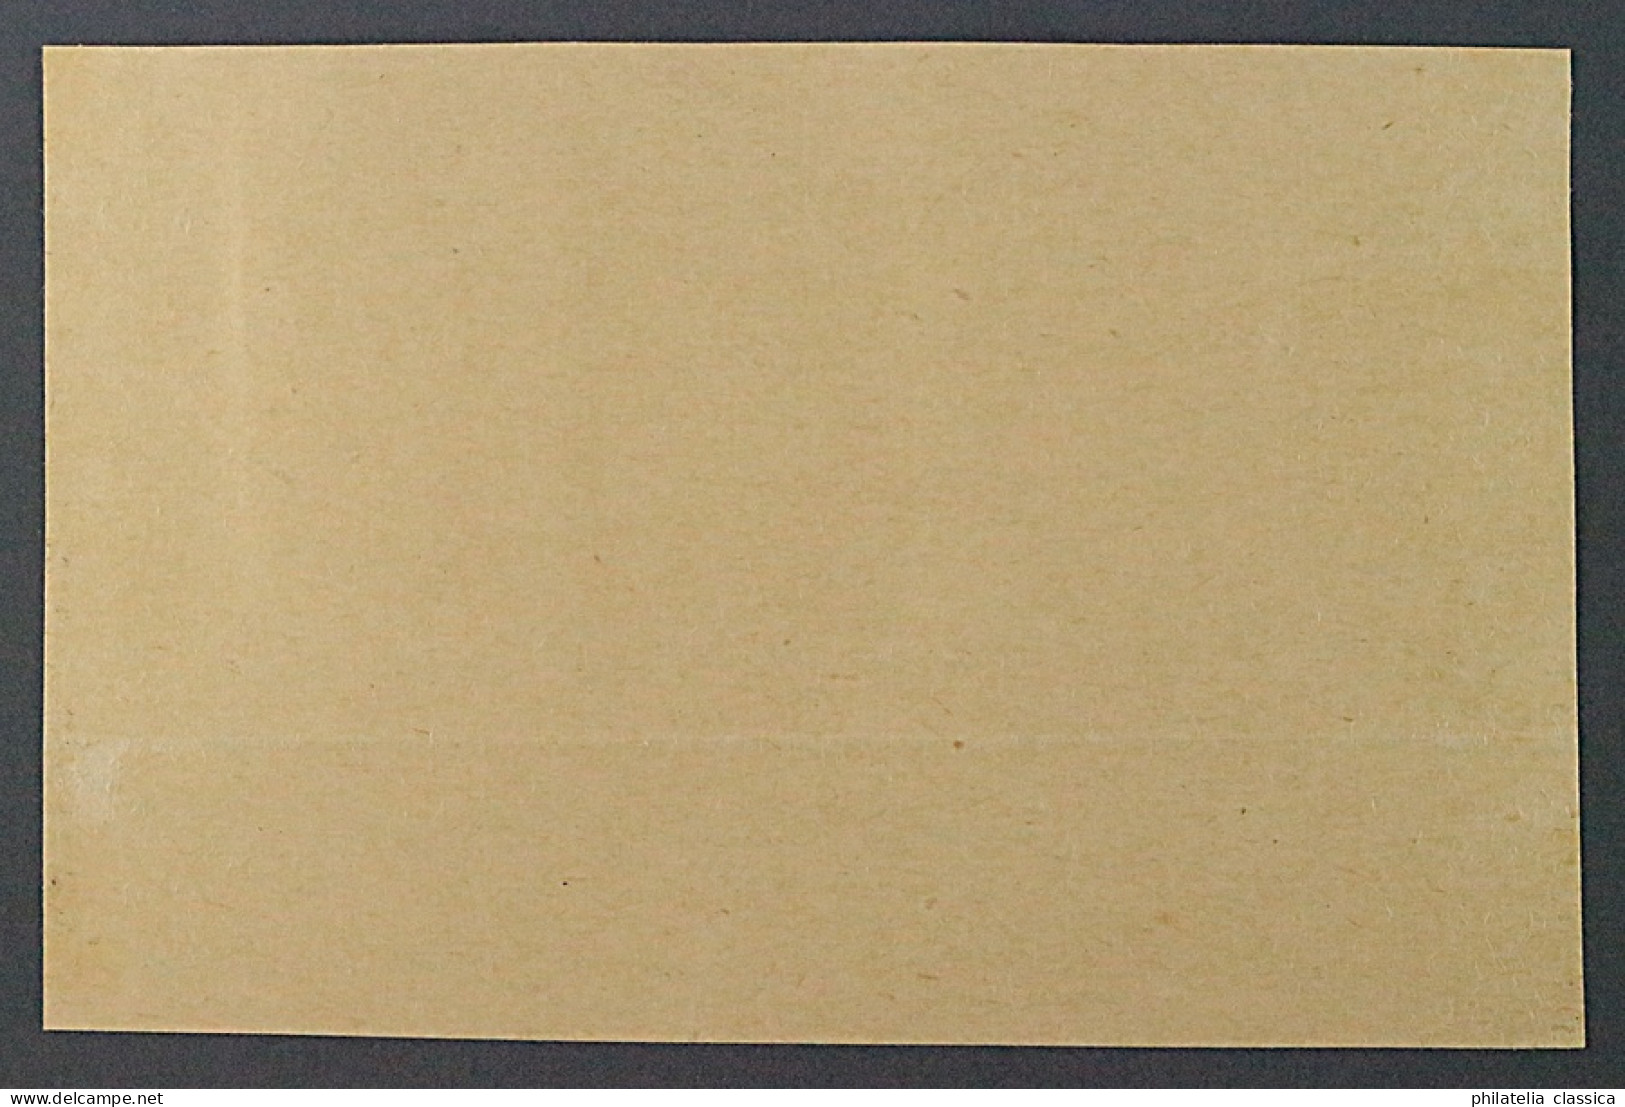 RASEINIAI 8+8 K, 80 K. Aufdruck KOPFSTEHEND, Briefstück Mit Fotoattest, 4600,-€ - Besetzungen 1938-45